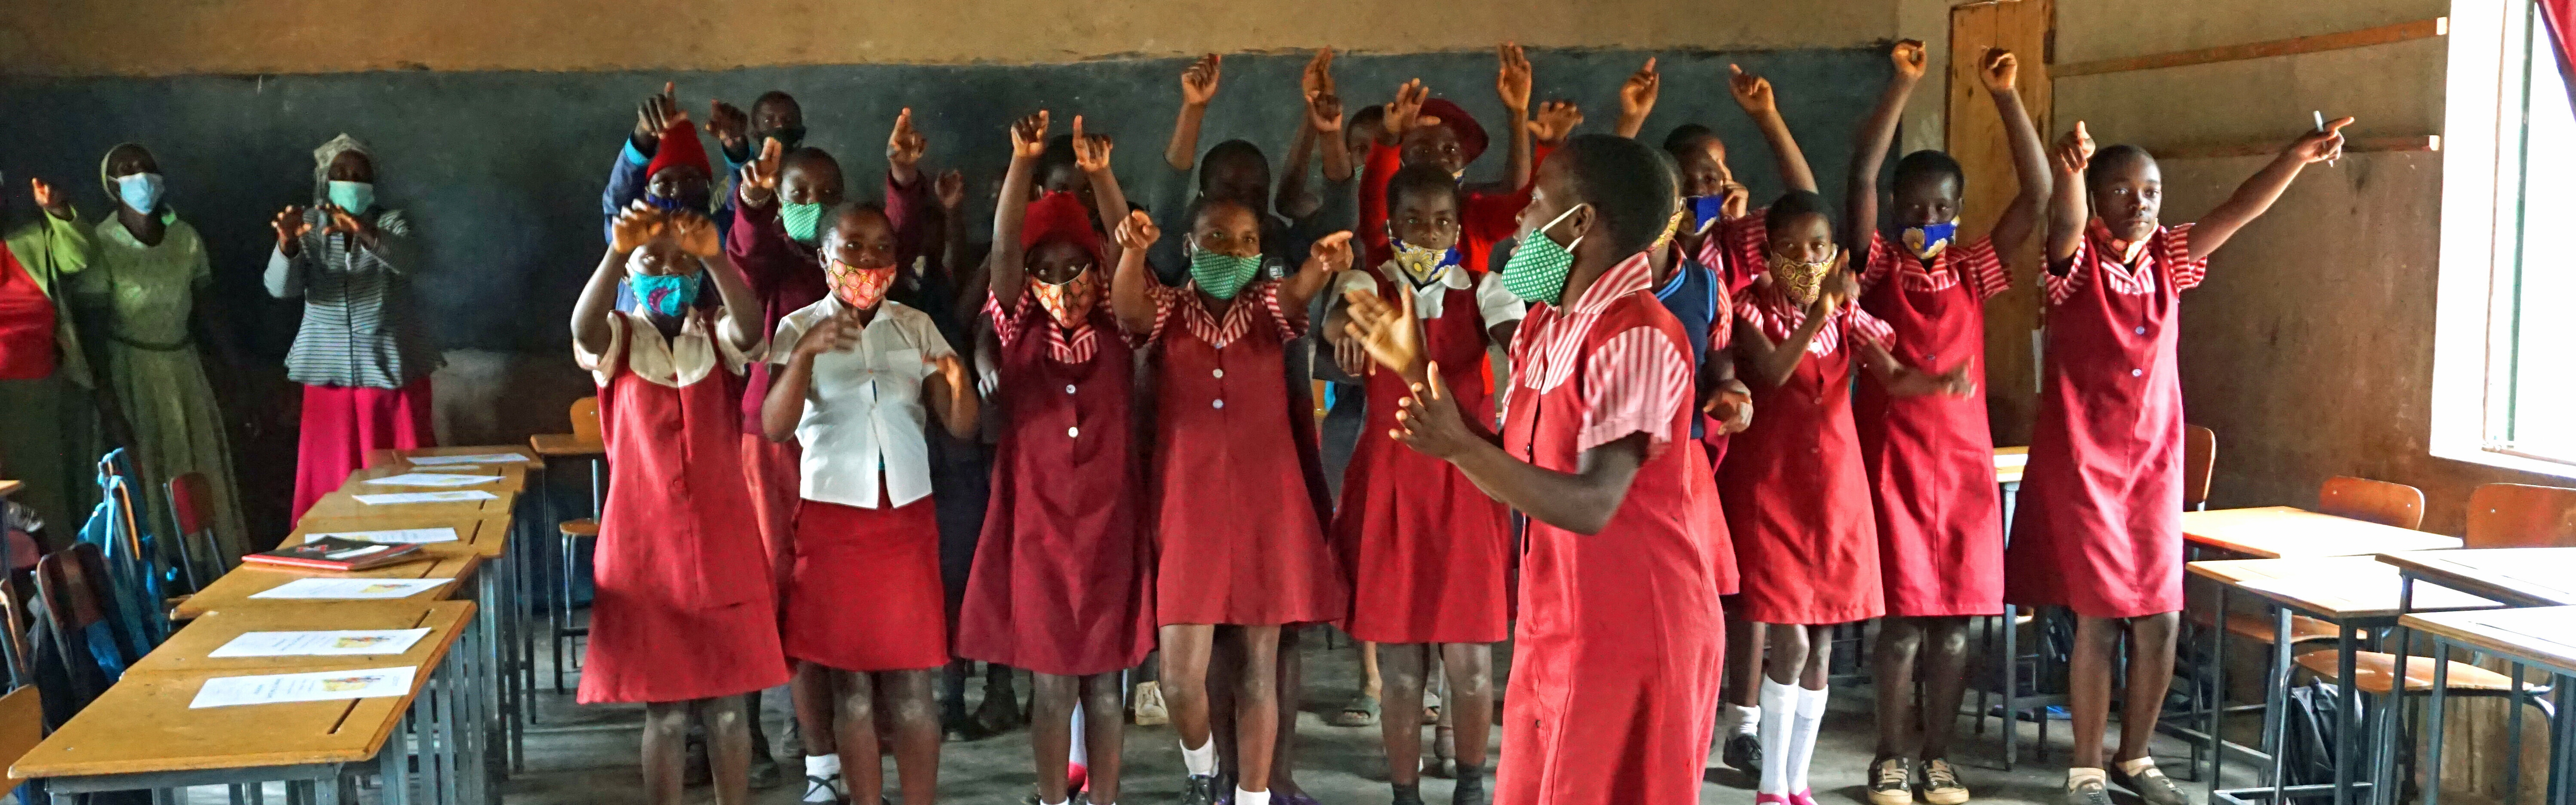 Hilfsprojekt von Kinderhilfswerk Stiftung Global-Care für Kinder in einer Schule in Simbabwe 